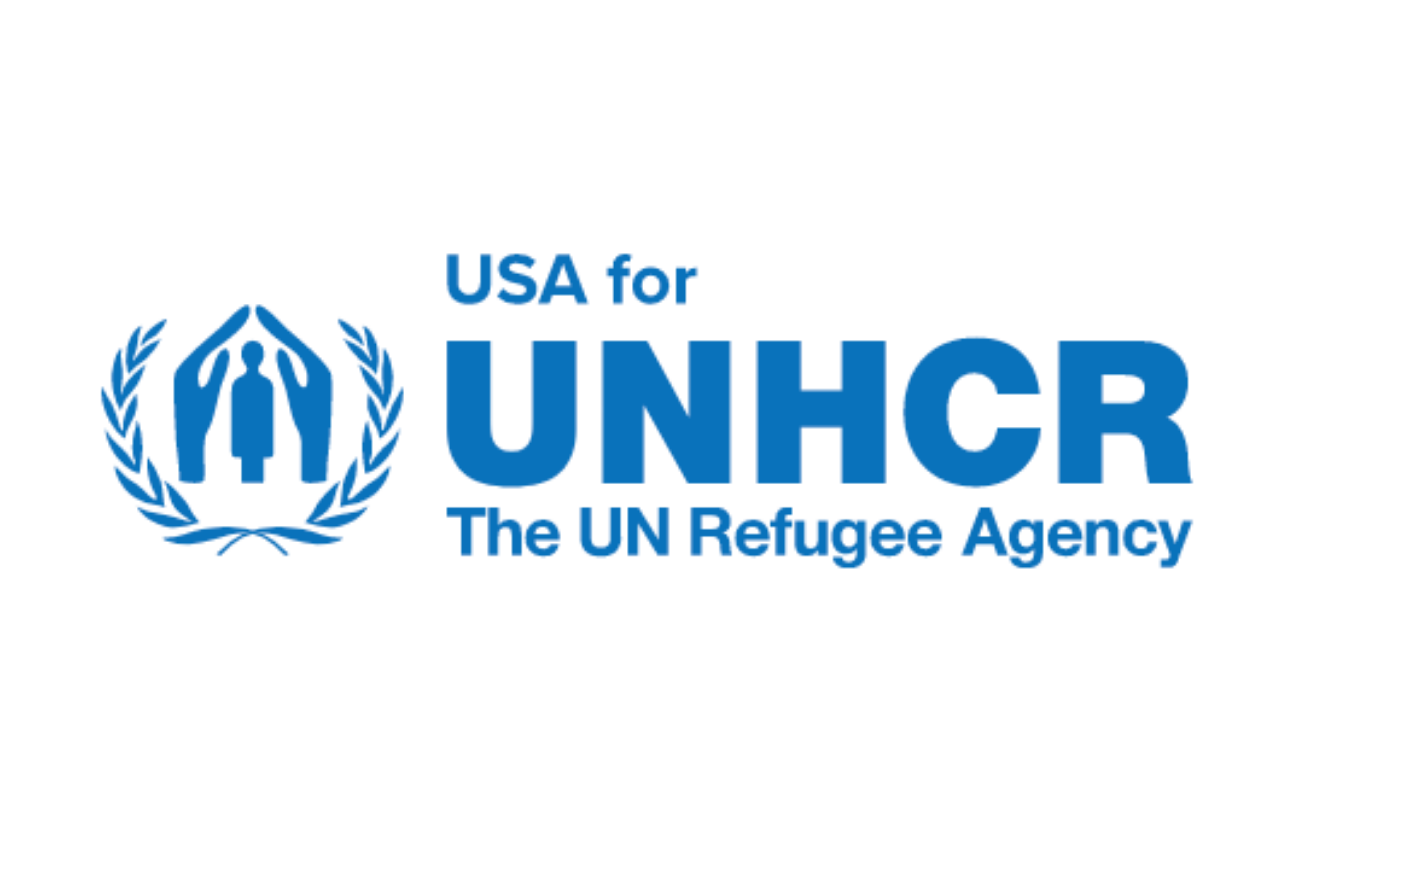 USA for UNHCR: The UN Refugee Agency logo